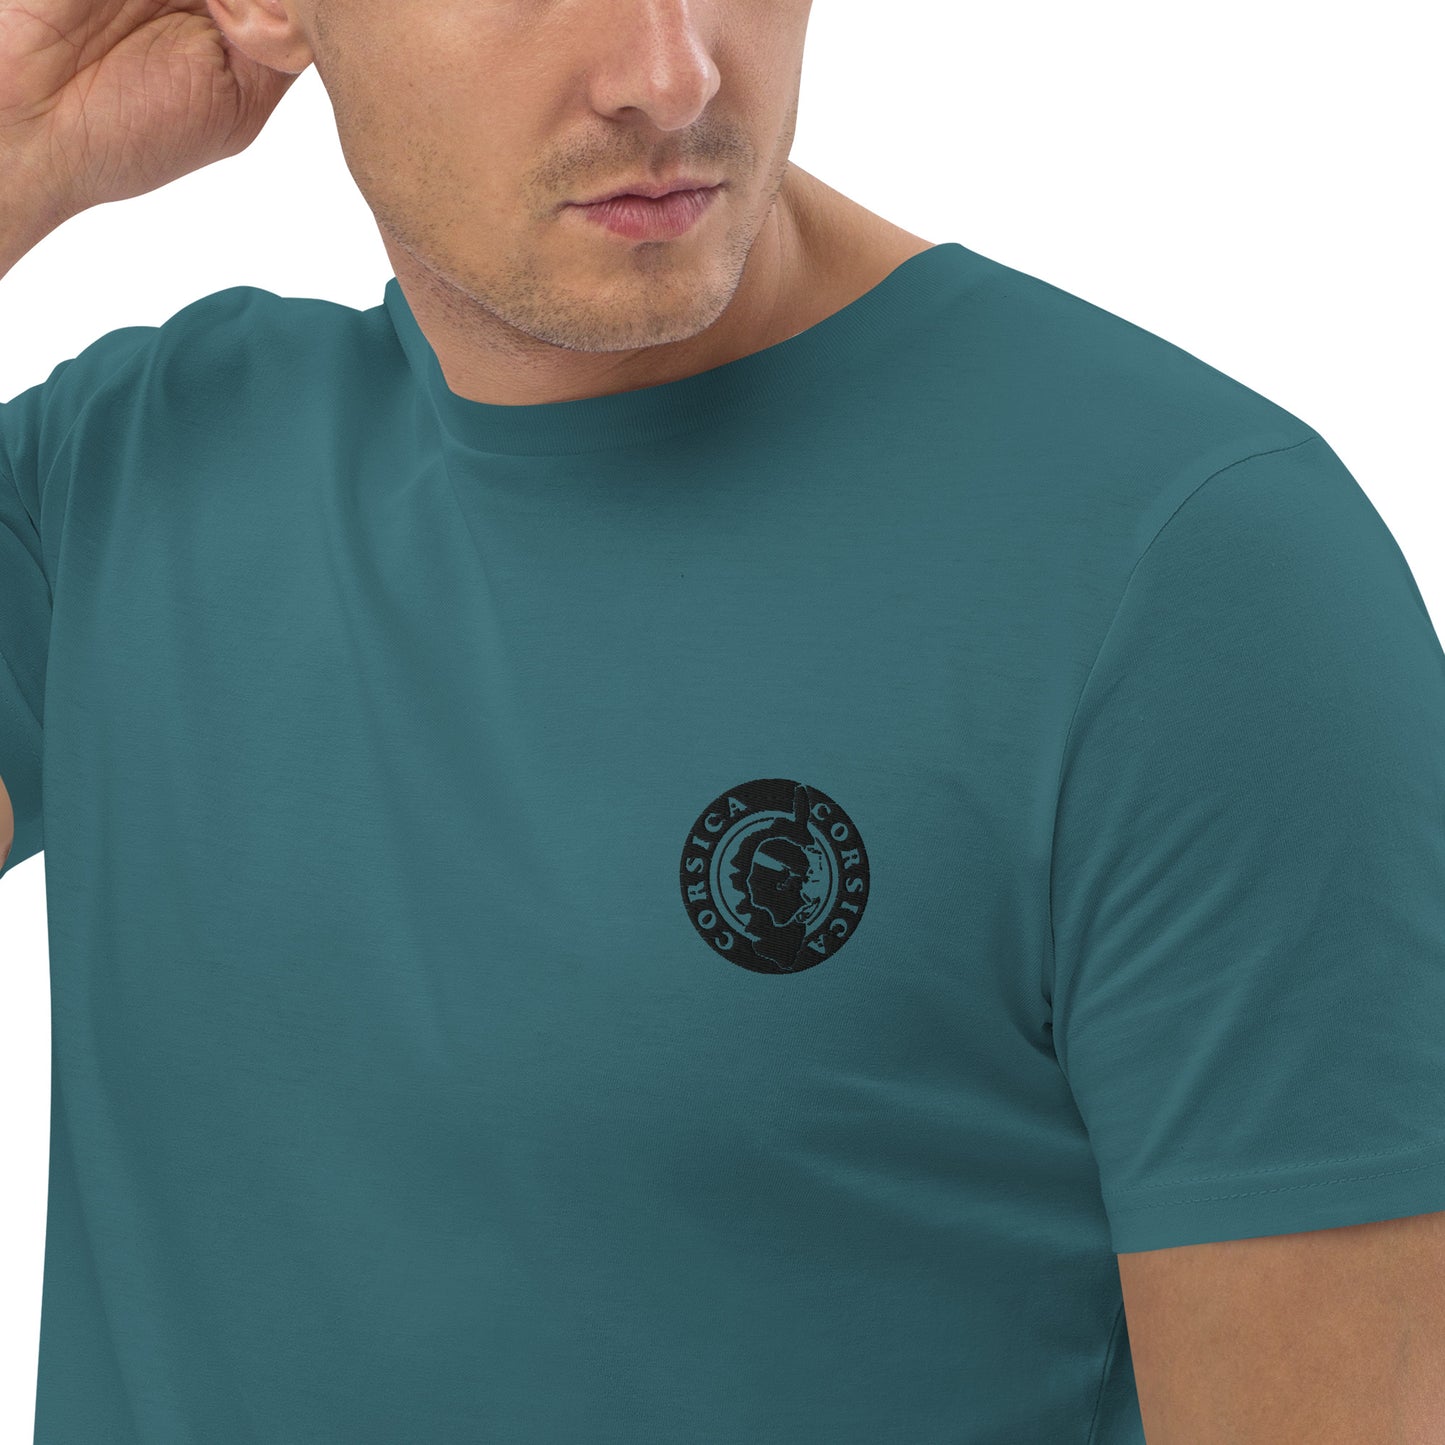 T-shirt unisexe en coton biologique Corsica - Ochju Ochju Stargazer / S Ochju T-shirt unisexe en coton biologique Corsica